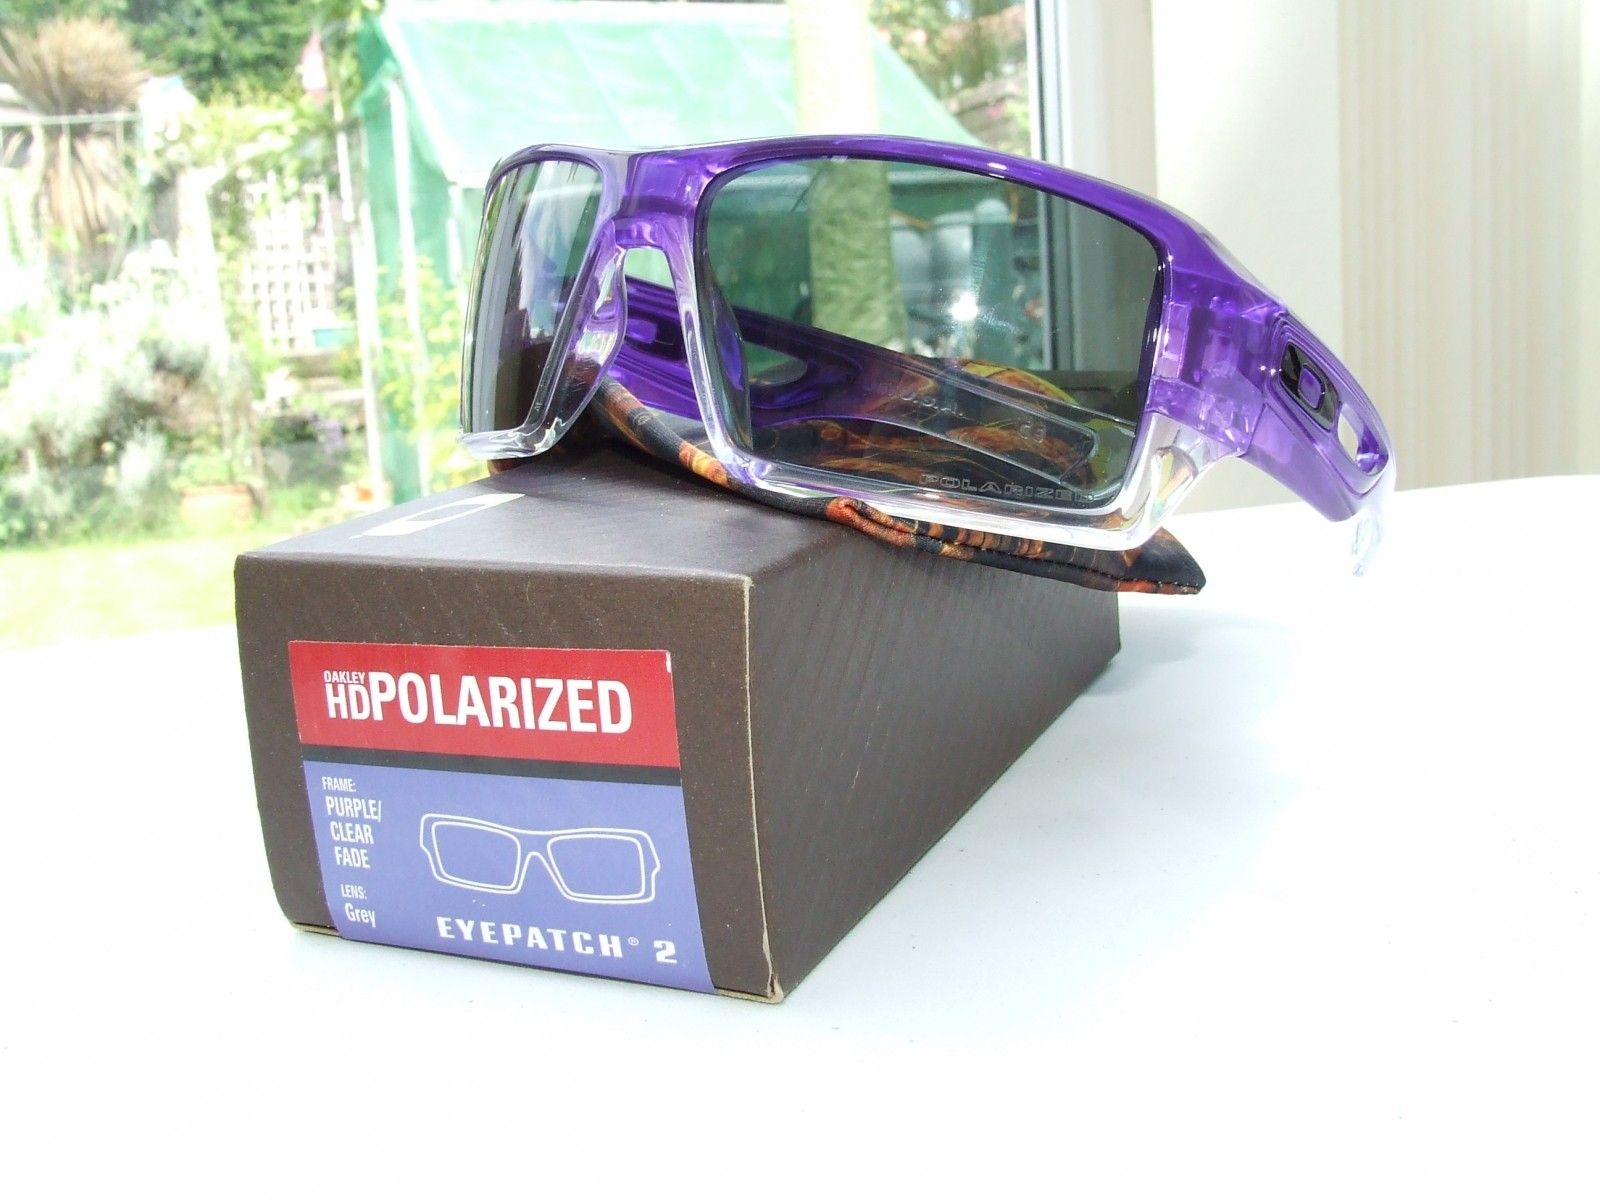 My Purple Clear Fade EyePatch 2.0s